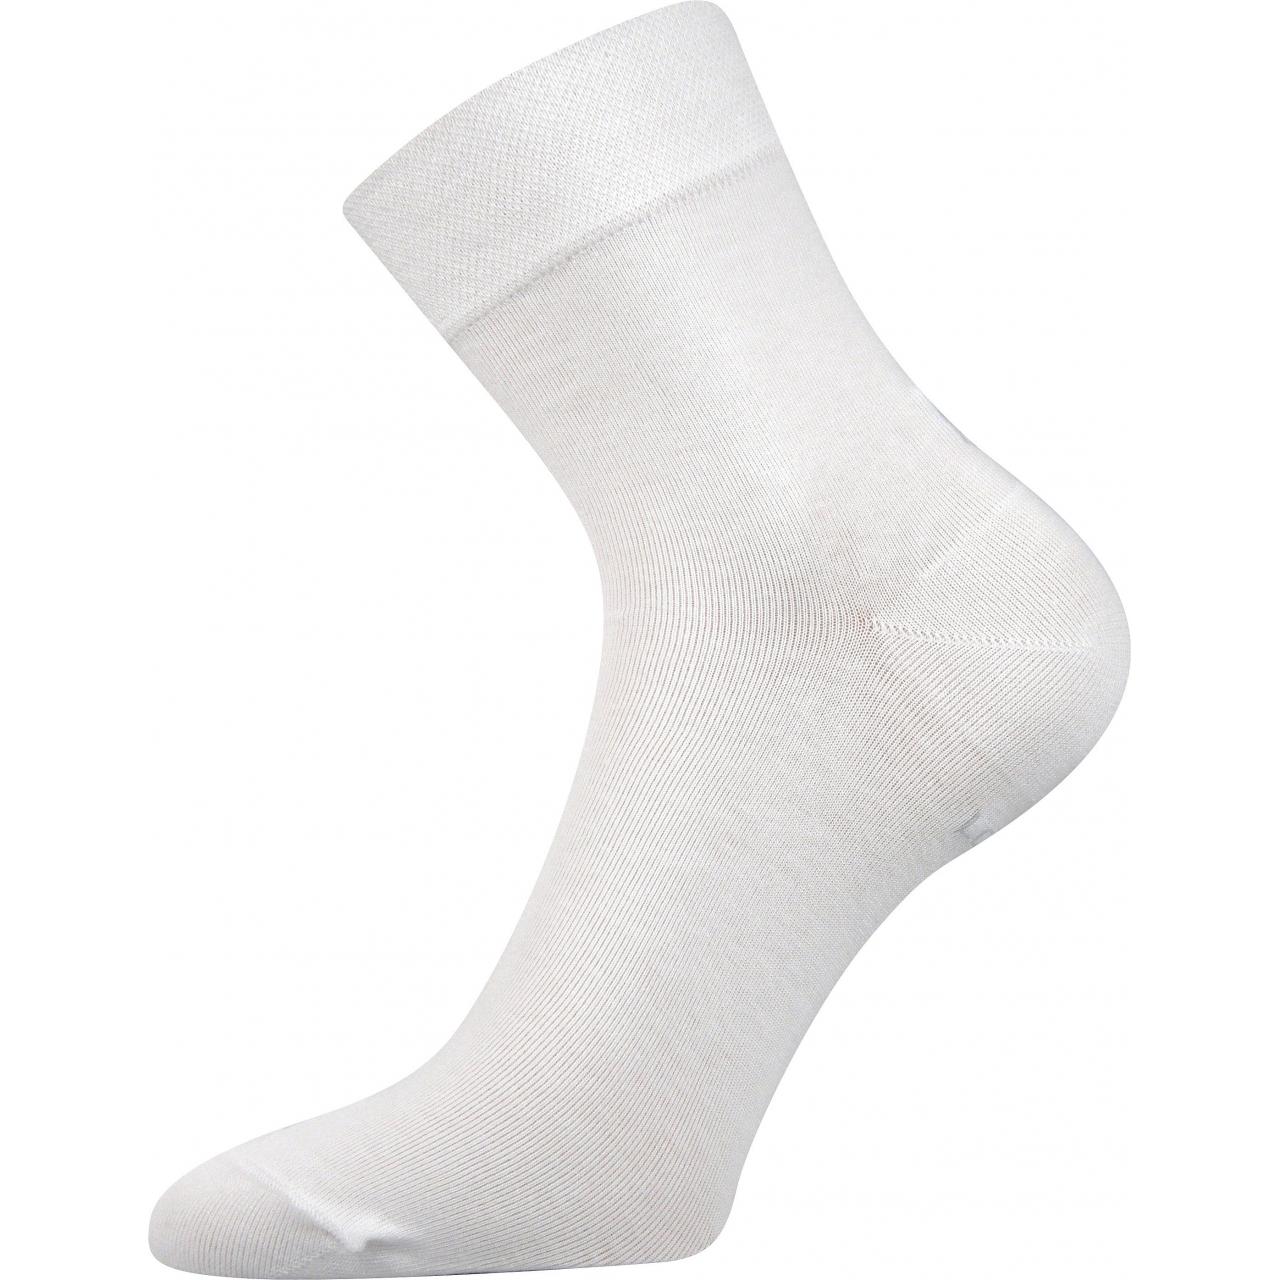 Ponožky dámské Lonka Fanera - bílé, 39-42